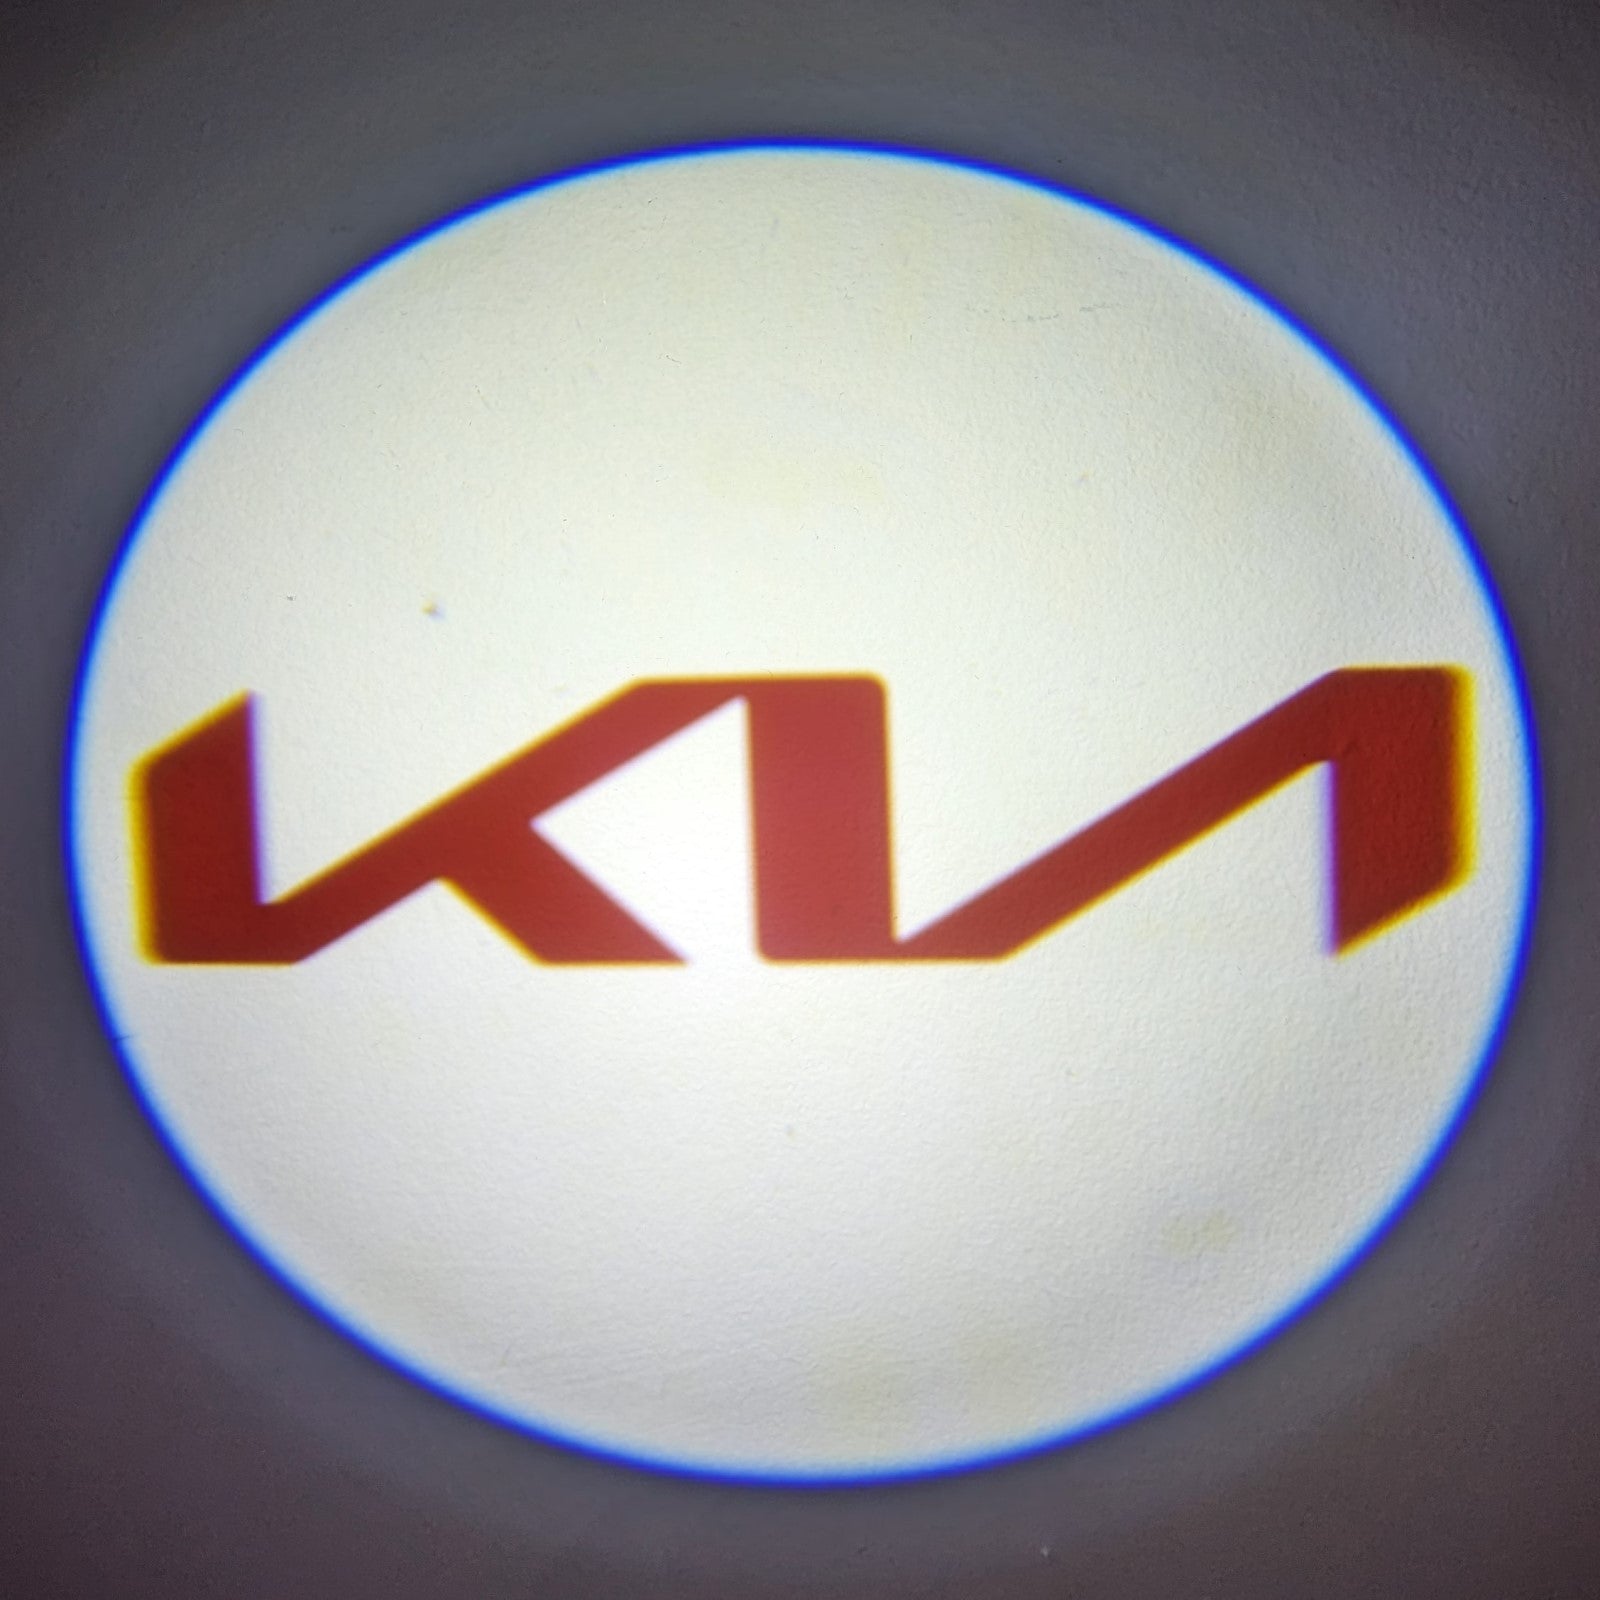 Luzes Cortesia com Logotipo marca Kia Novo